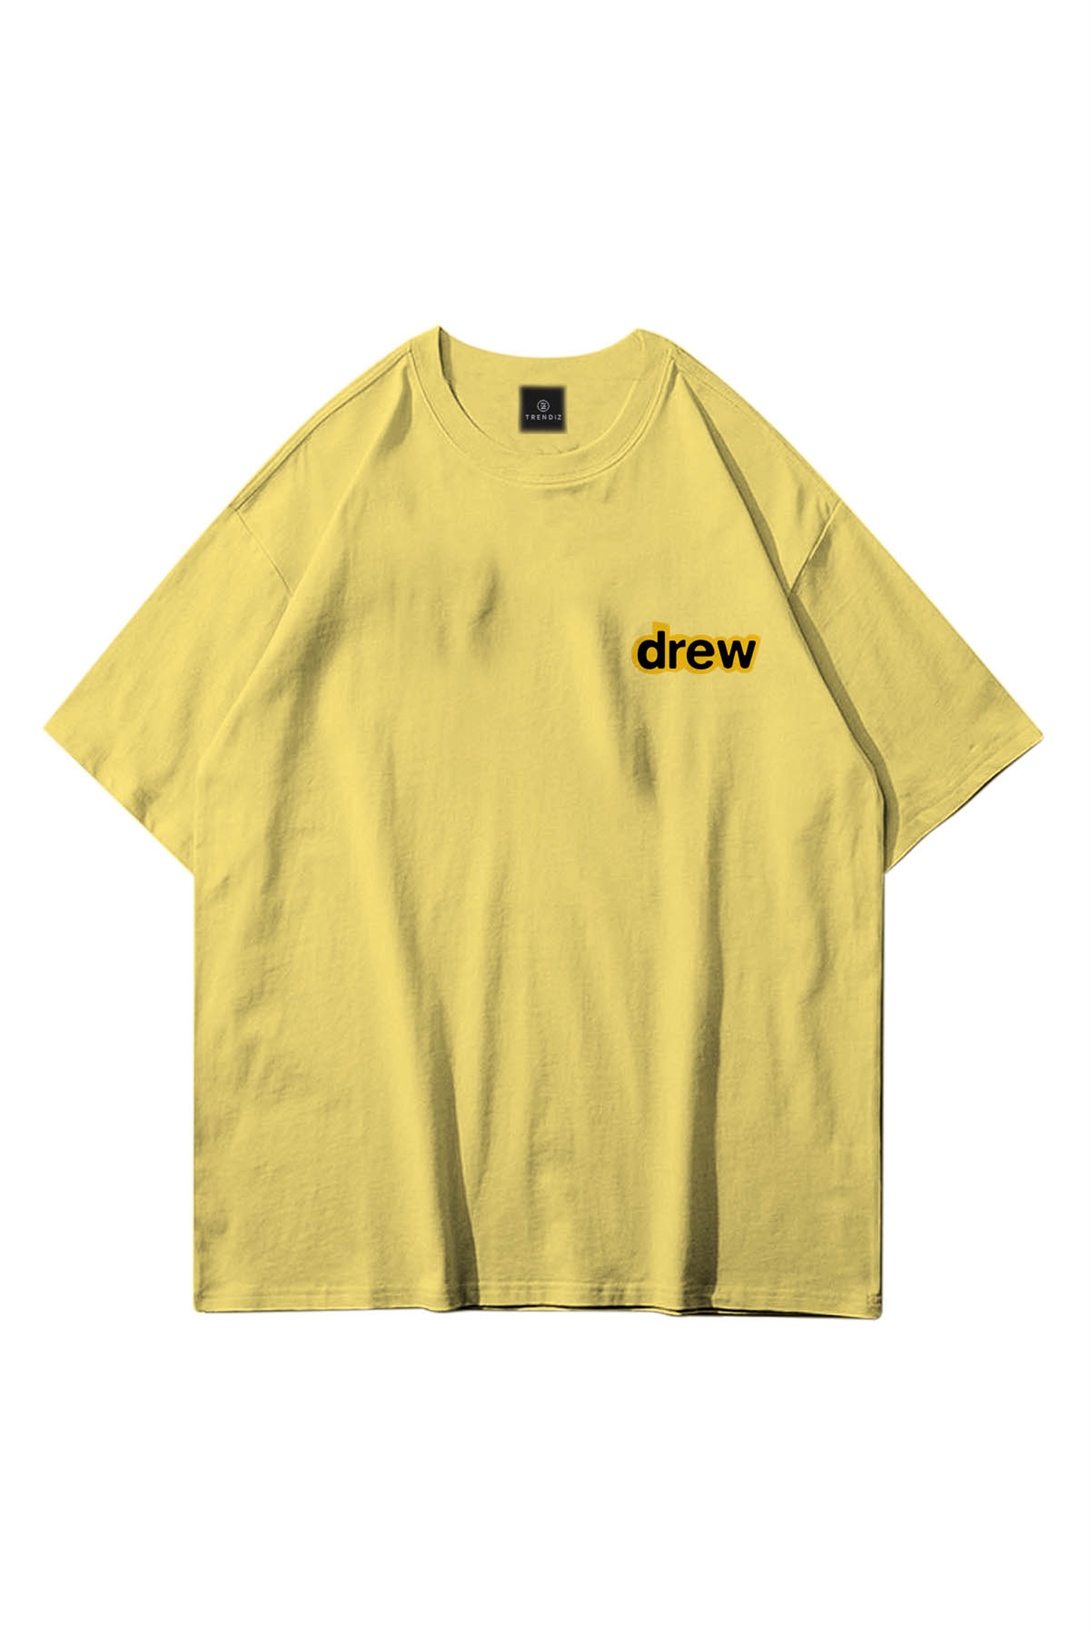 Trendiz Unisex Drew Bear Sarı Tshirt